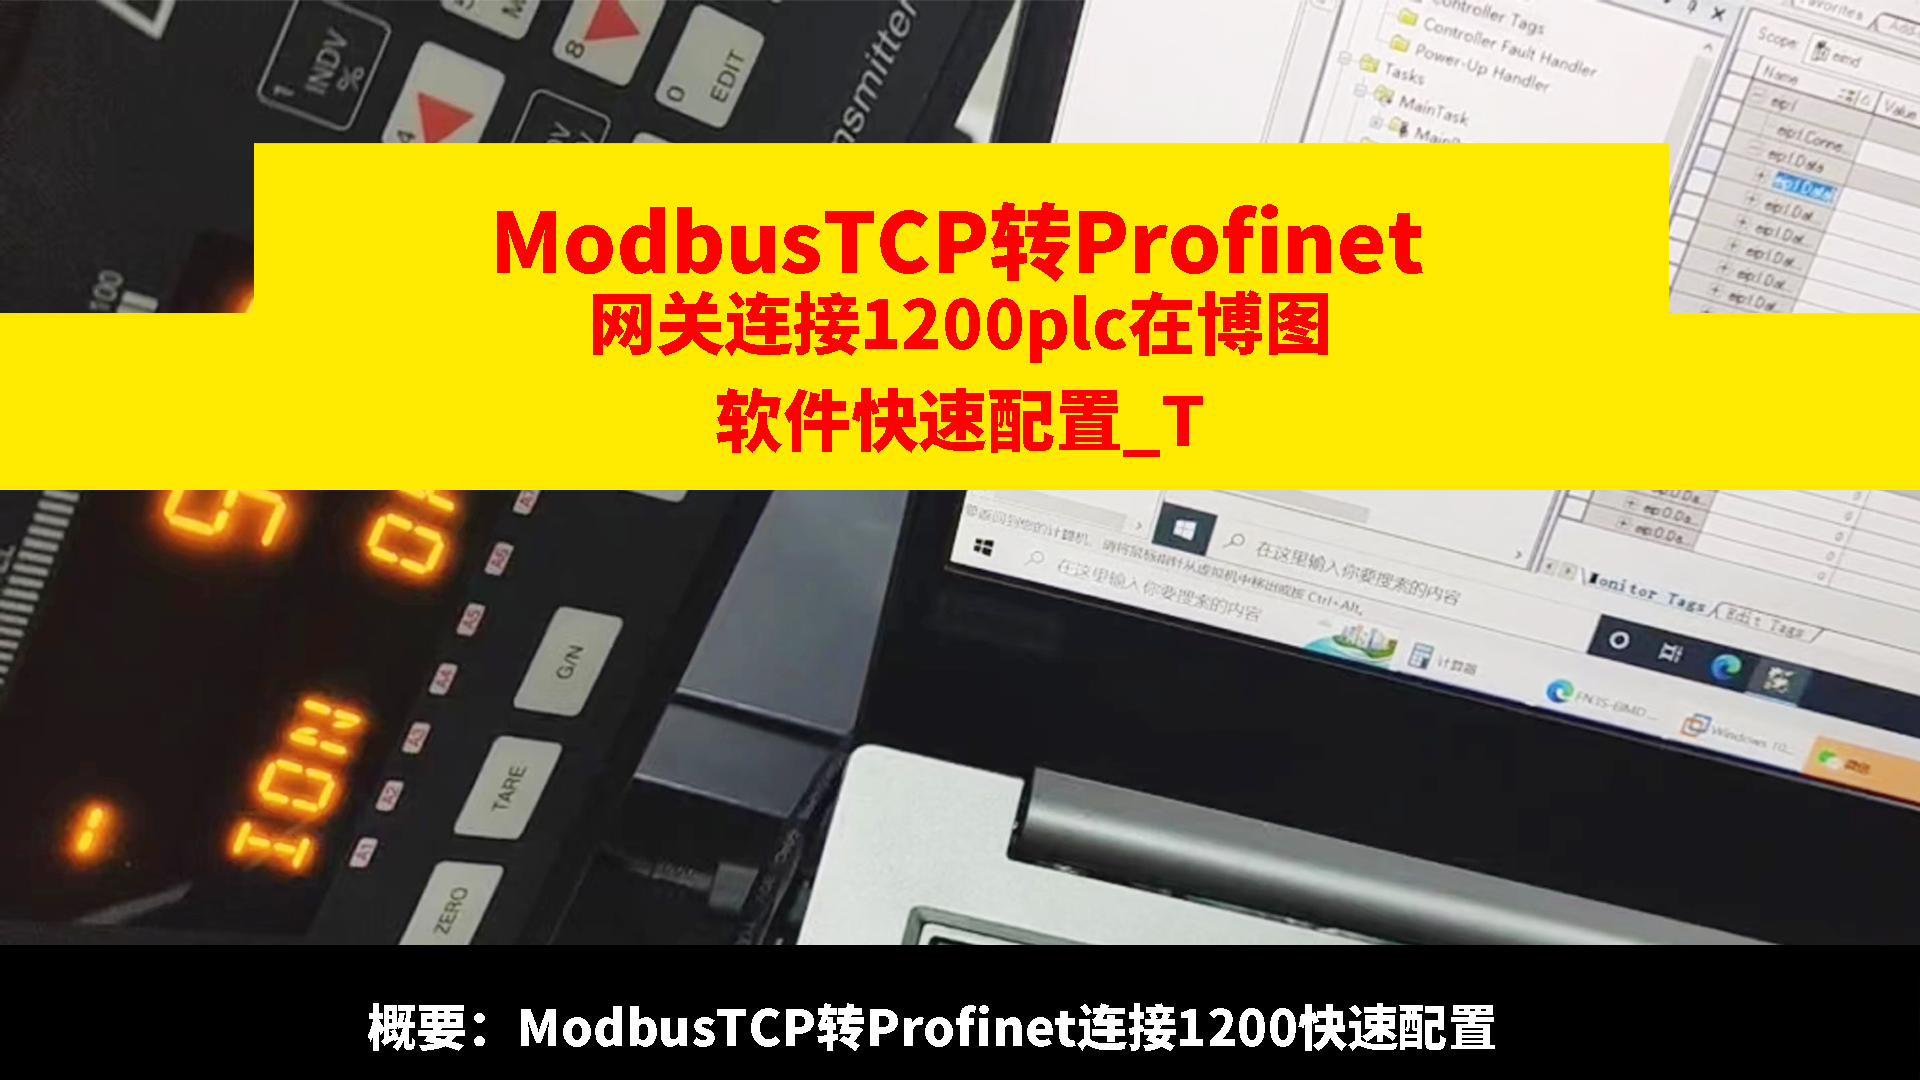 Modbus TCP转profinet网关连接1200plc在博图软件快速配置示例# ModbusTCP